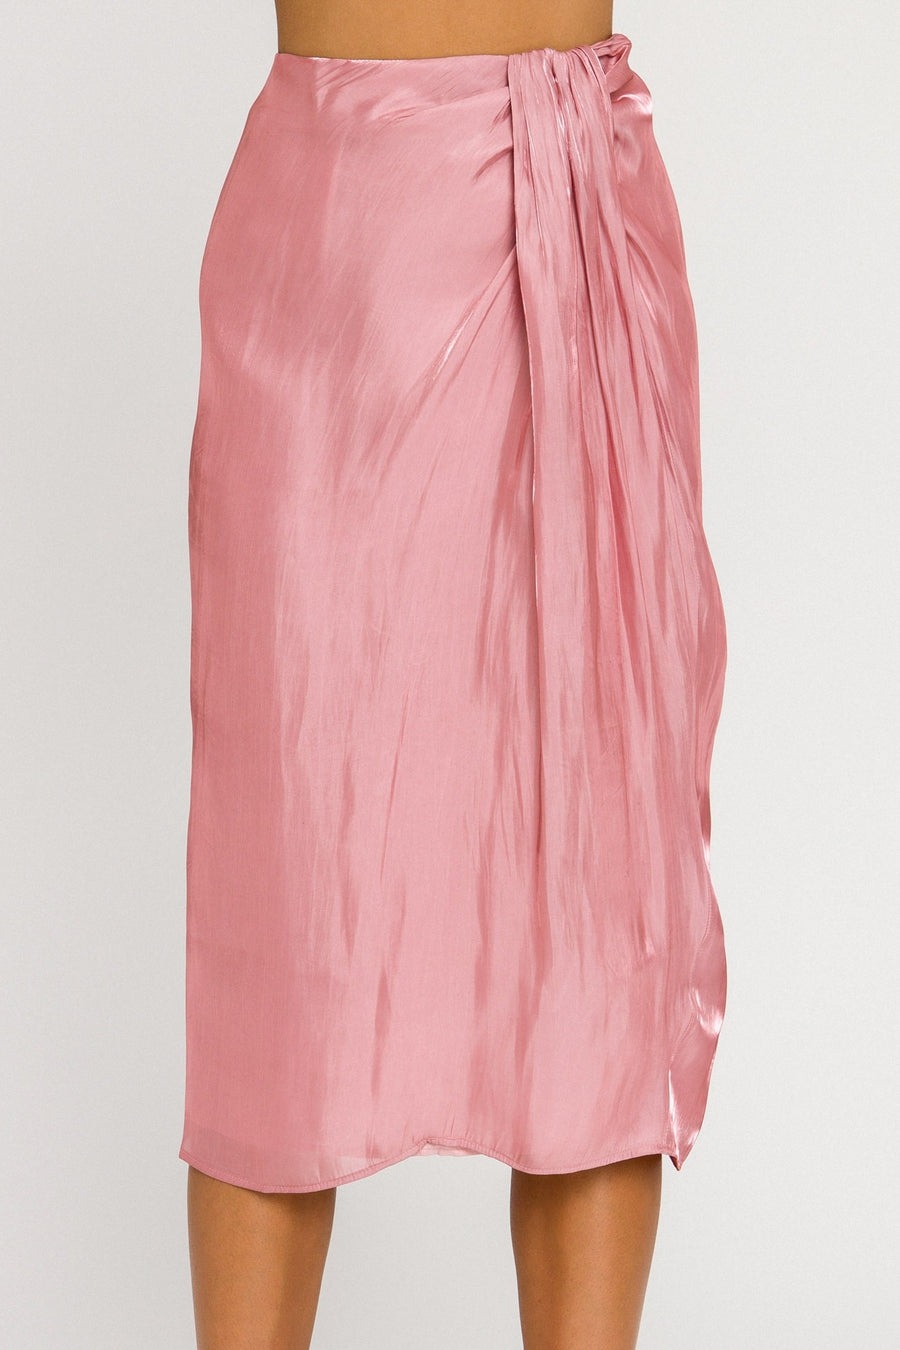 So Rosé Skirt